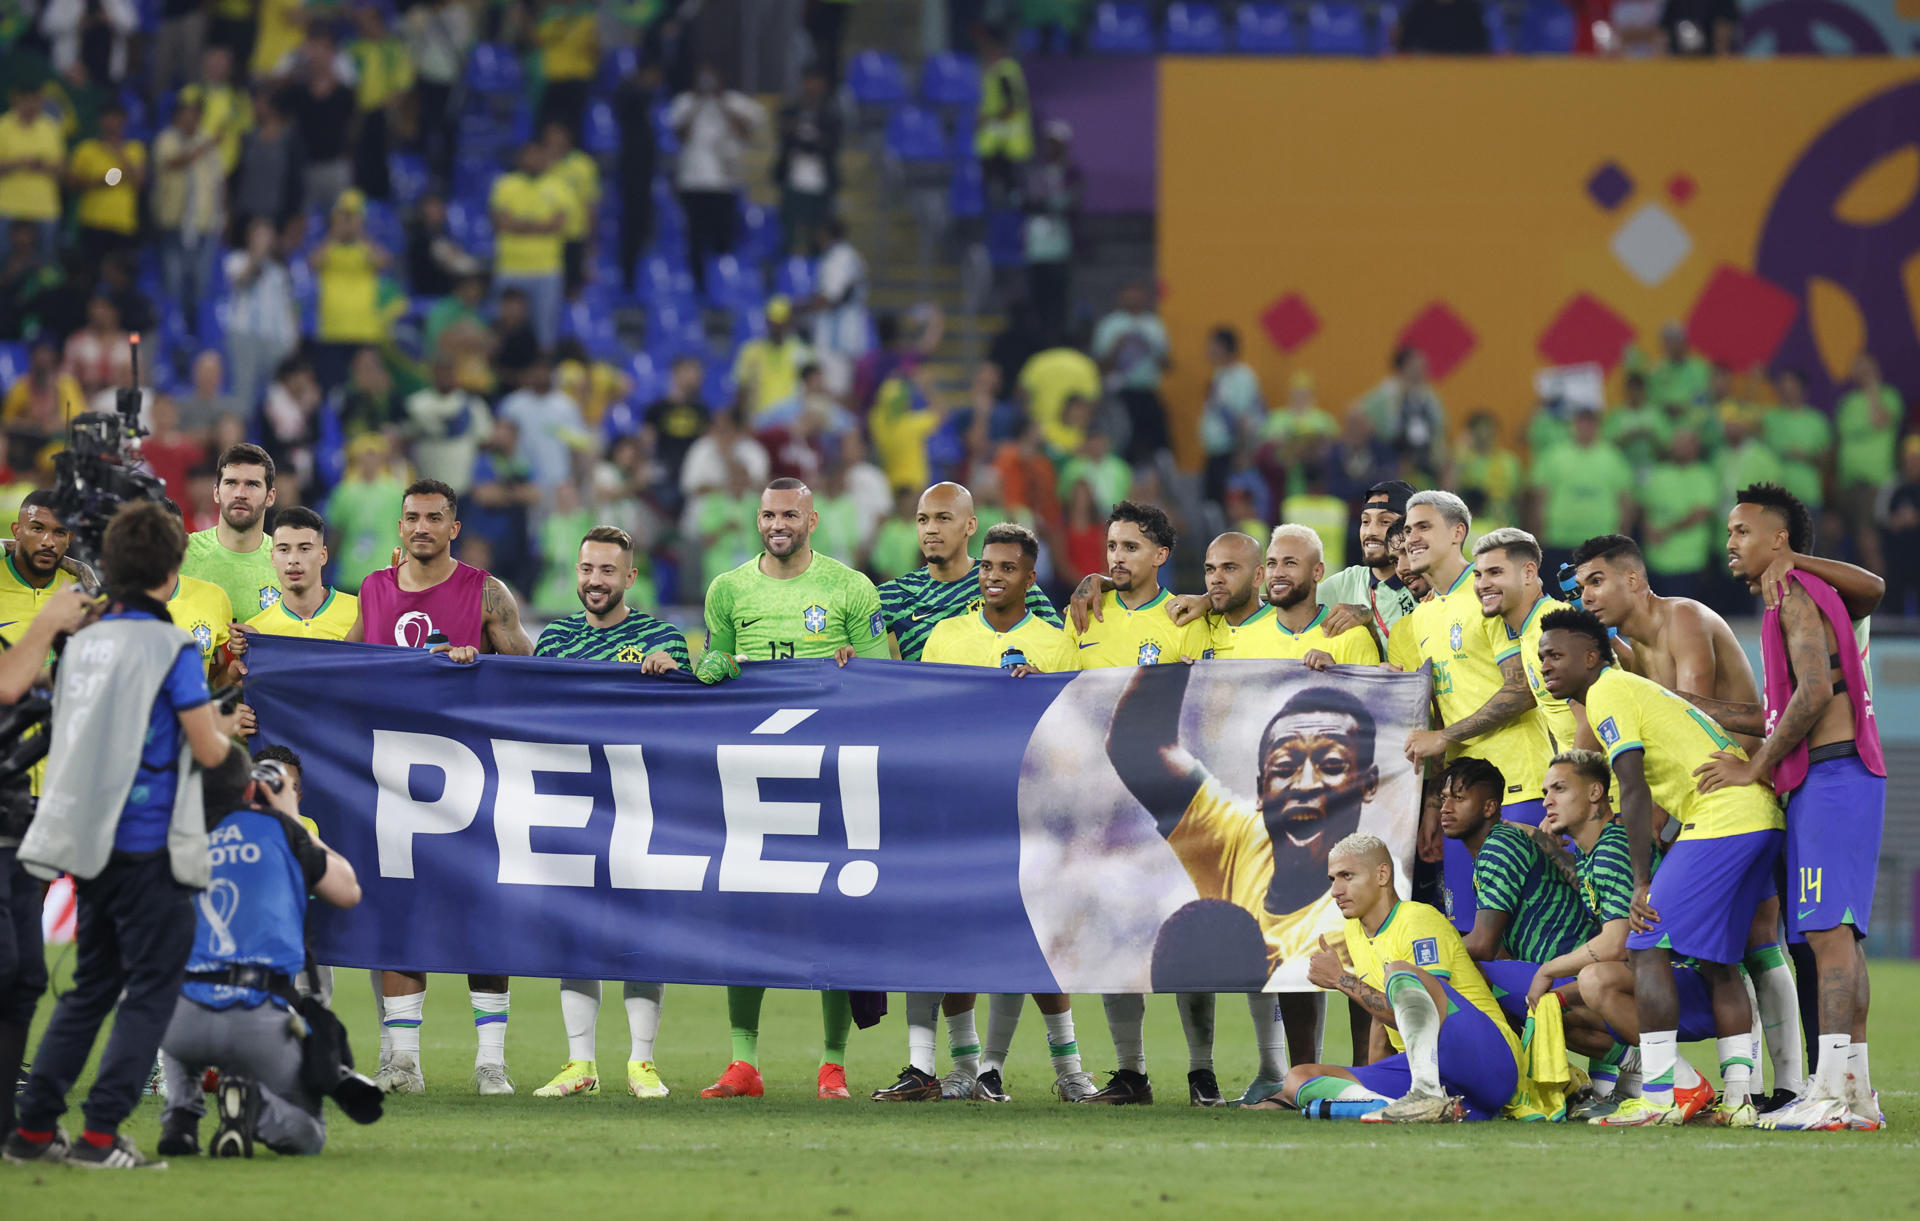 Jugadores de Brasil sostienen una pancarta de apoyo al astro brasileño Pelé